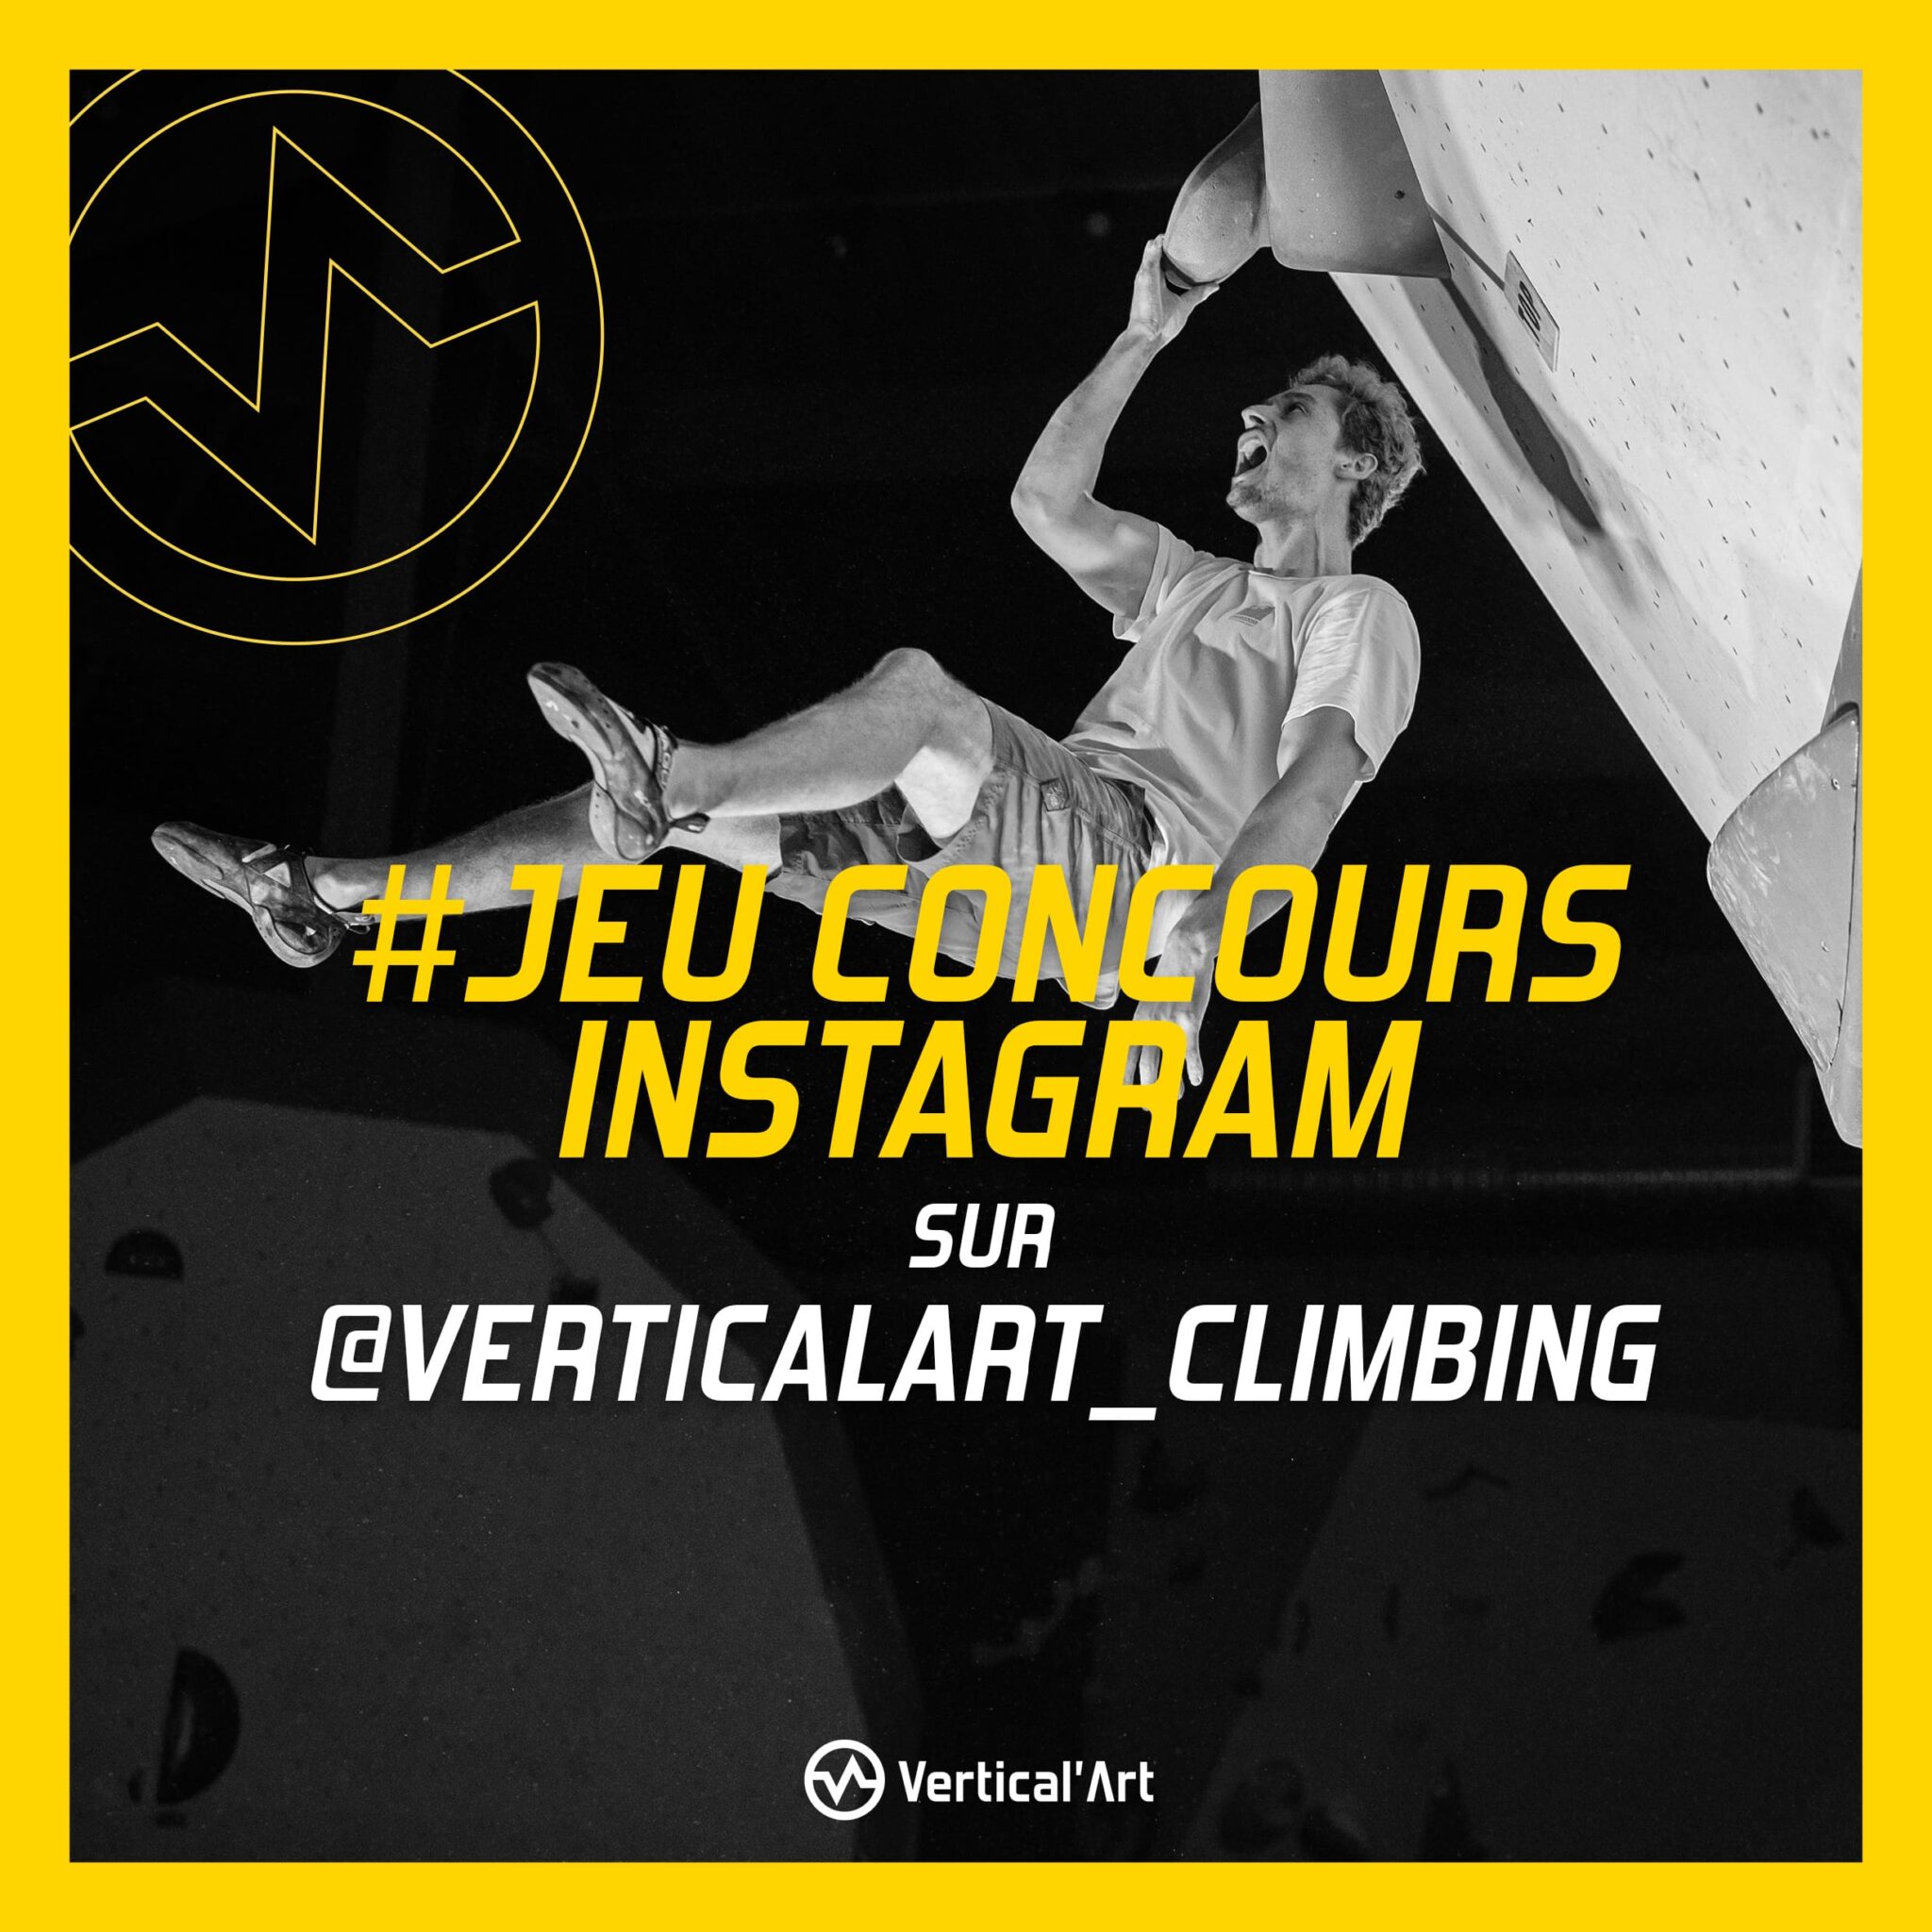 Jeu concours Instagram Vertical'Art janvier 2023